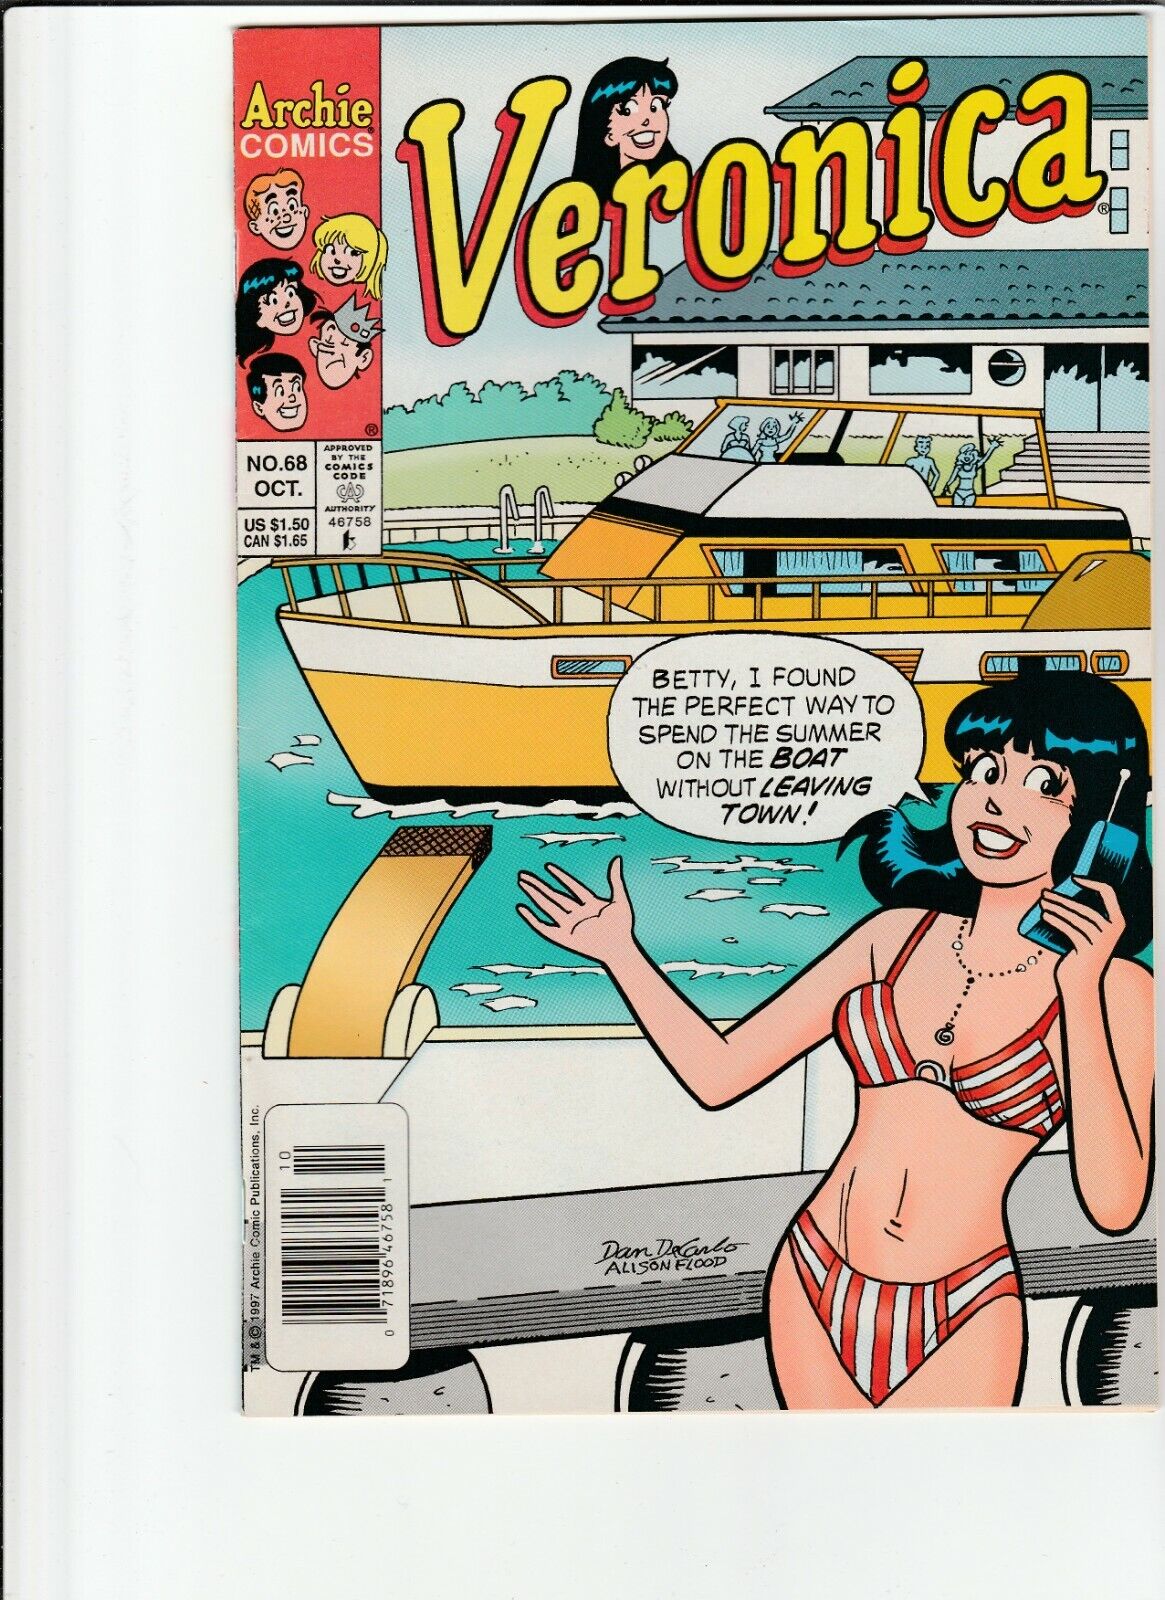 VERONICA # 68 NEWSTAND  SEXY BIKINI COVER  1989 DAN DECARLO  .99 AUCTIONS